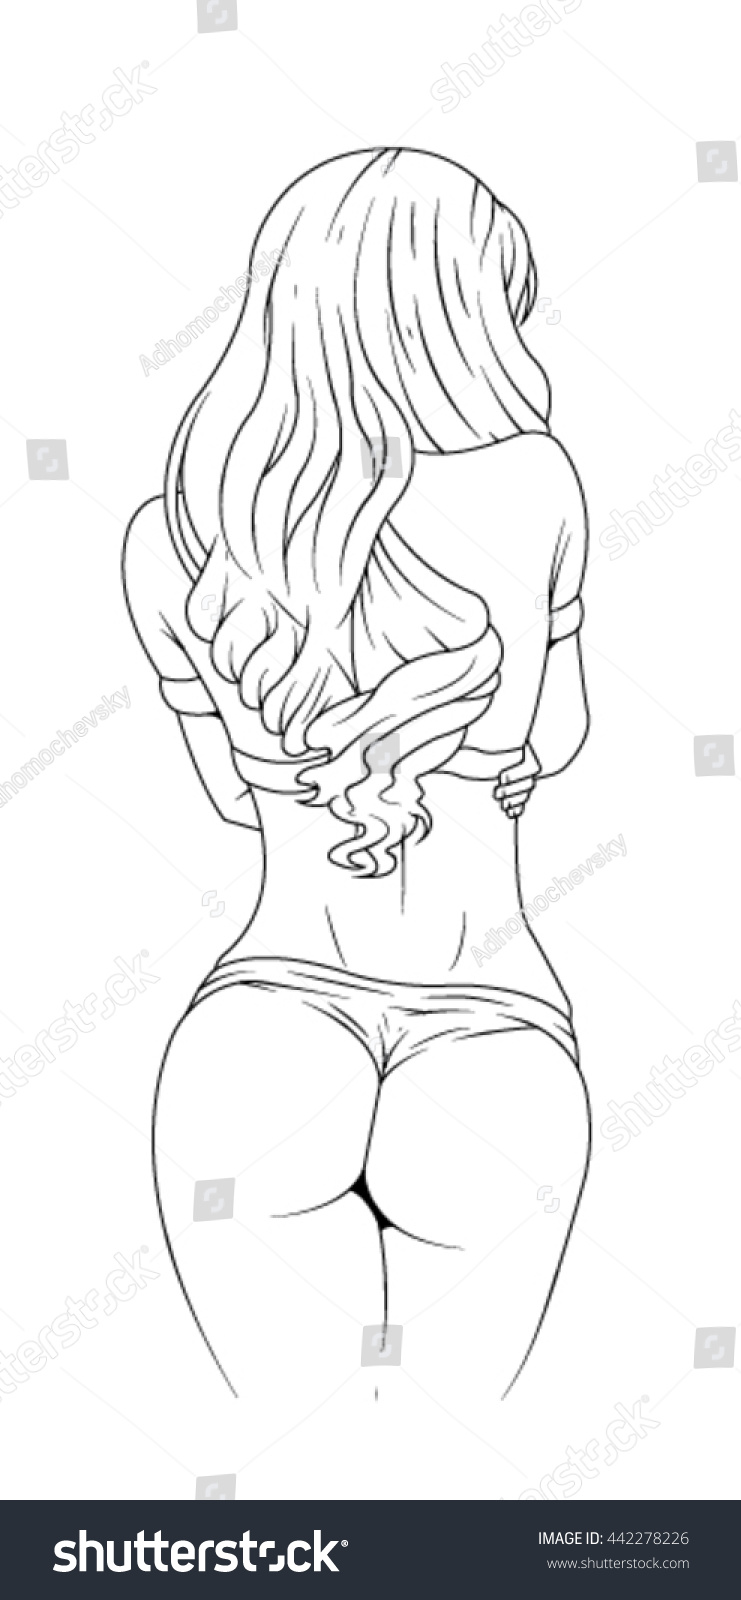 Сексуальная девушка рисунок карандашом (45 фото)